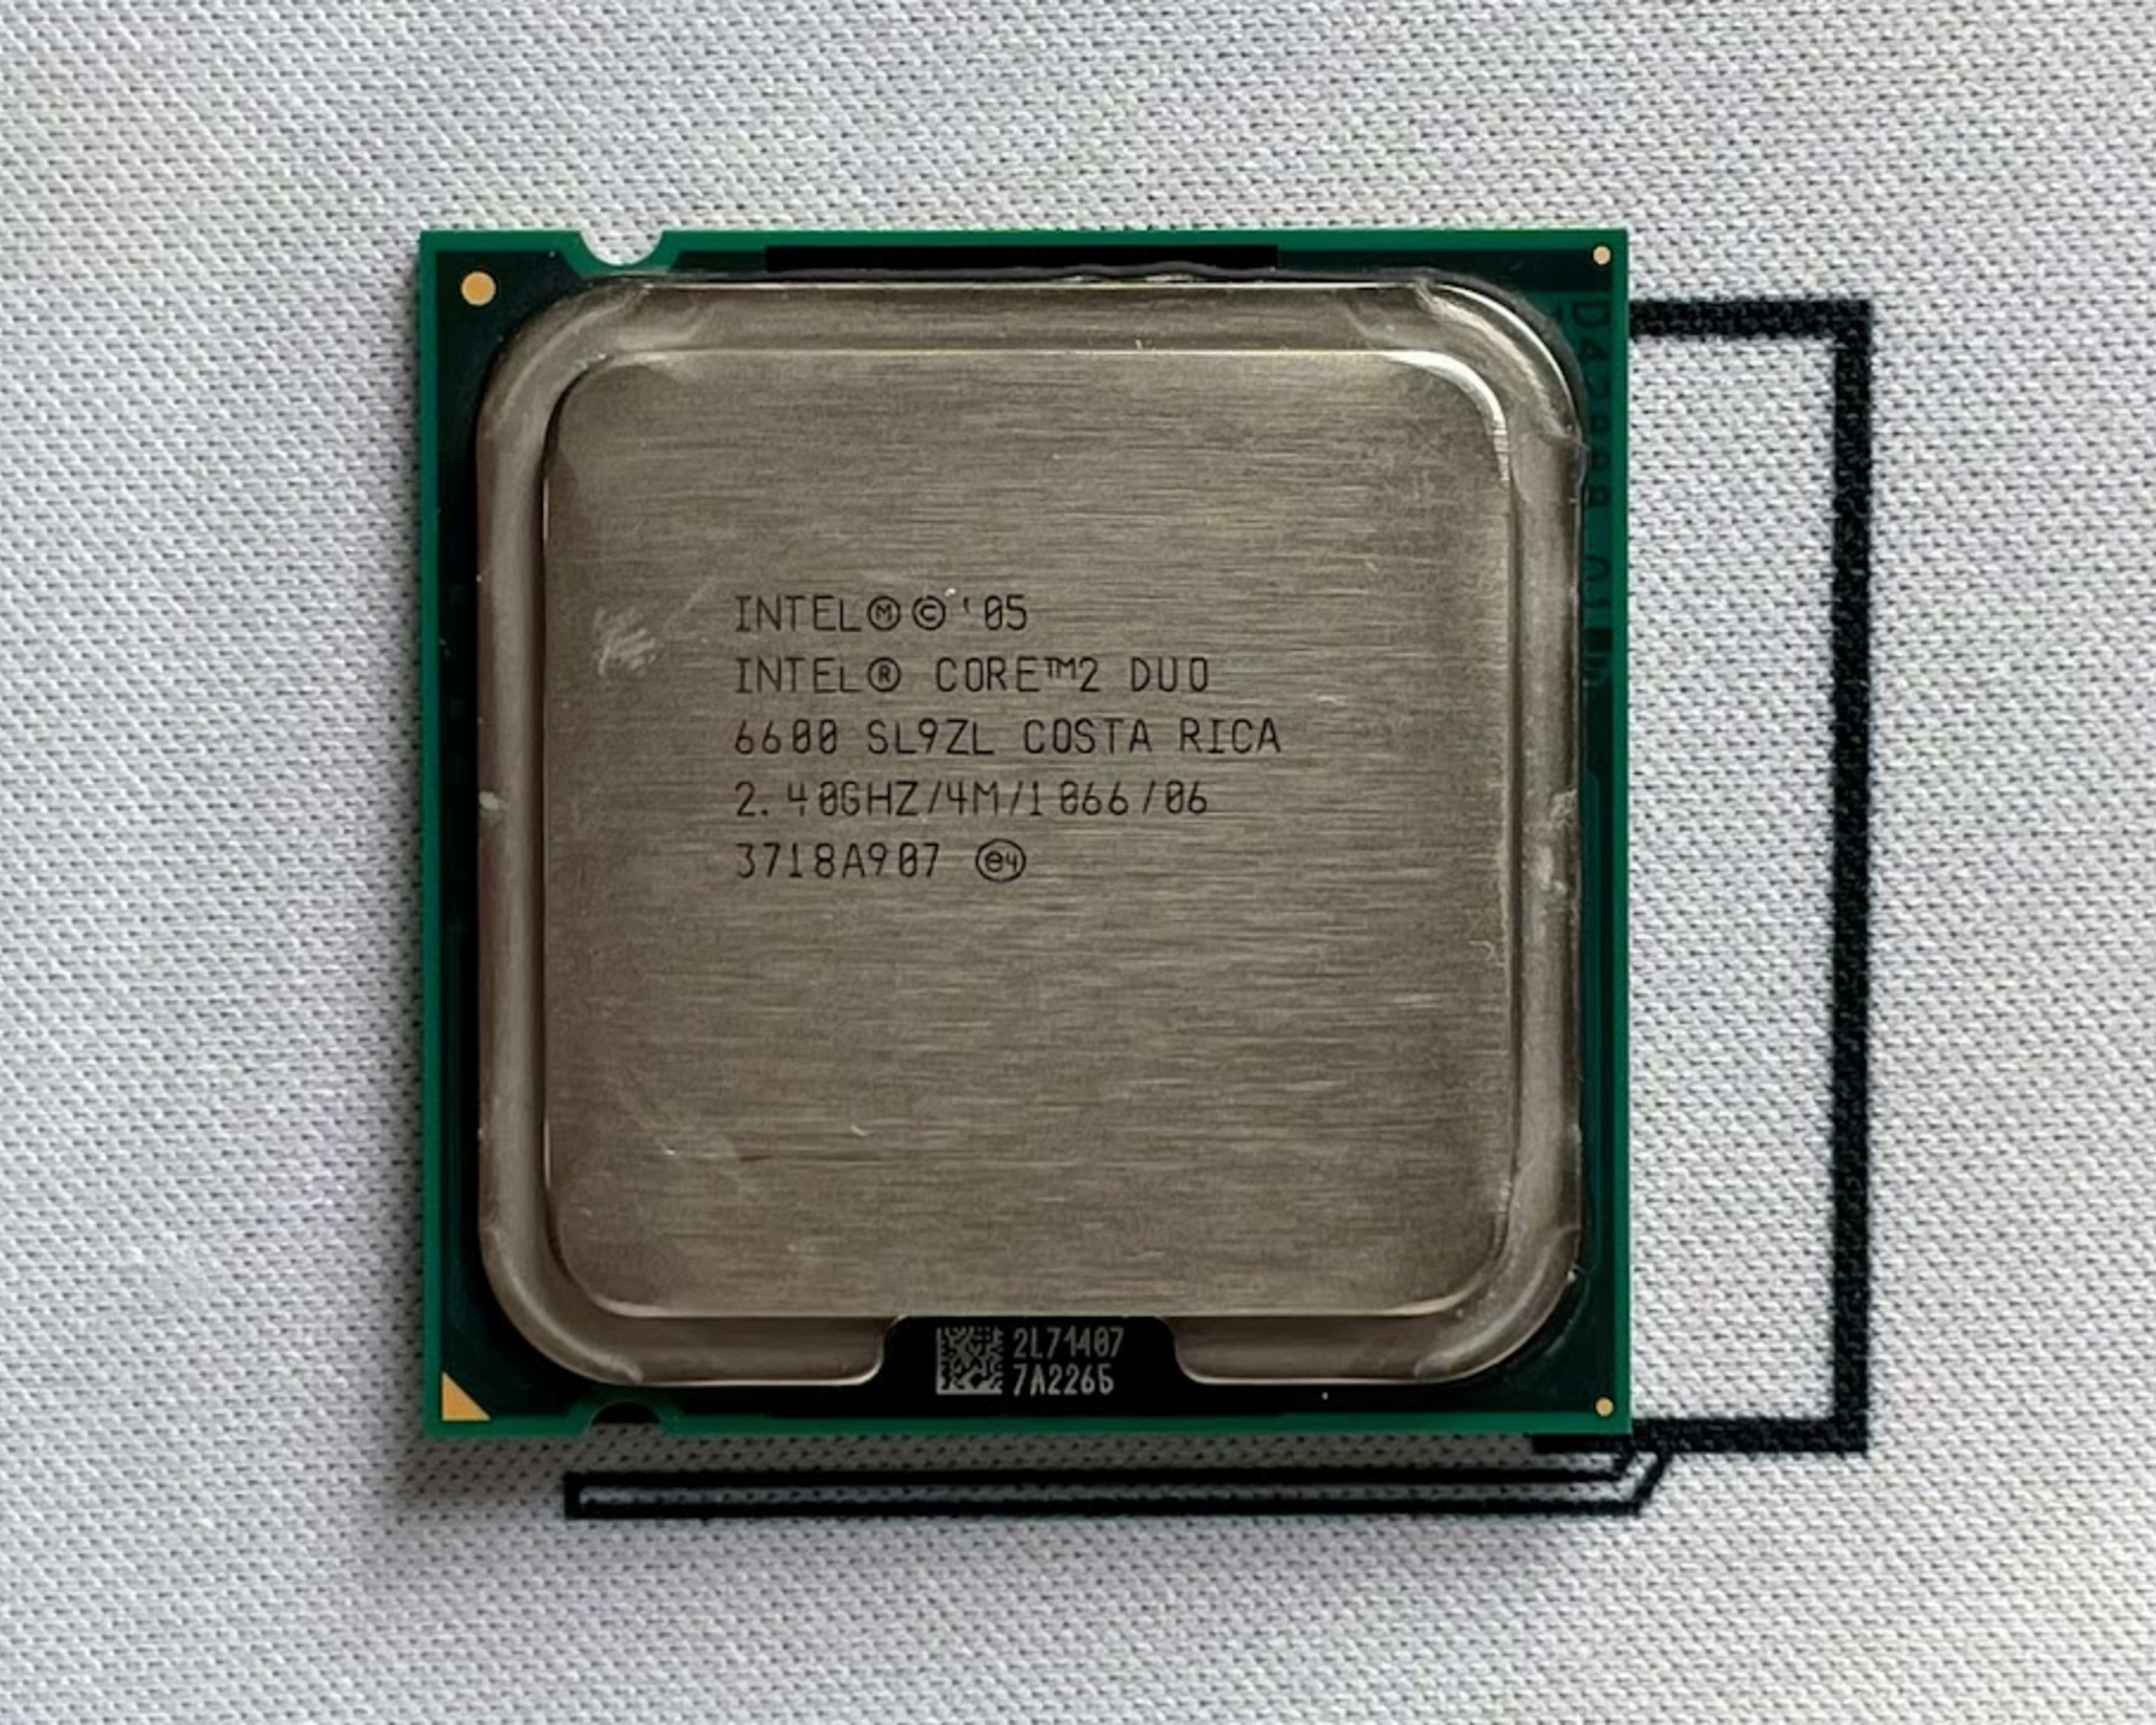 Intel Core 2 Duo E6600 2.40GHz Dual-Core 4MB L2 Cache PLGA775 CPU Processor SL9S8 65W